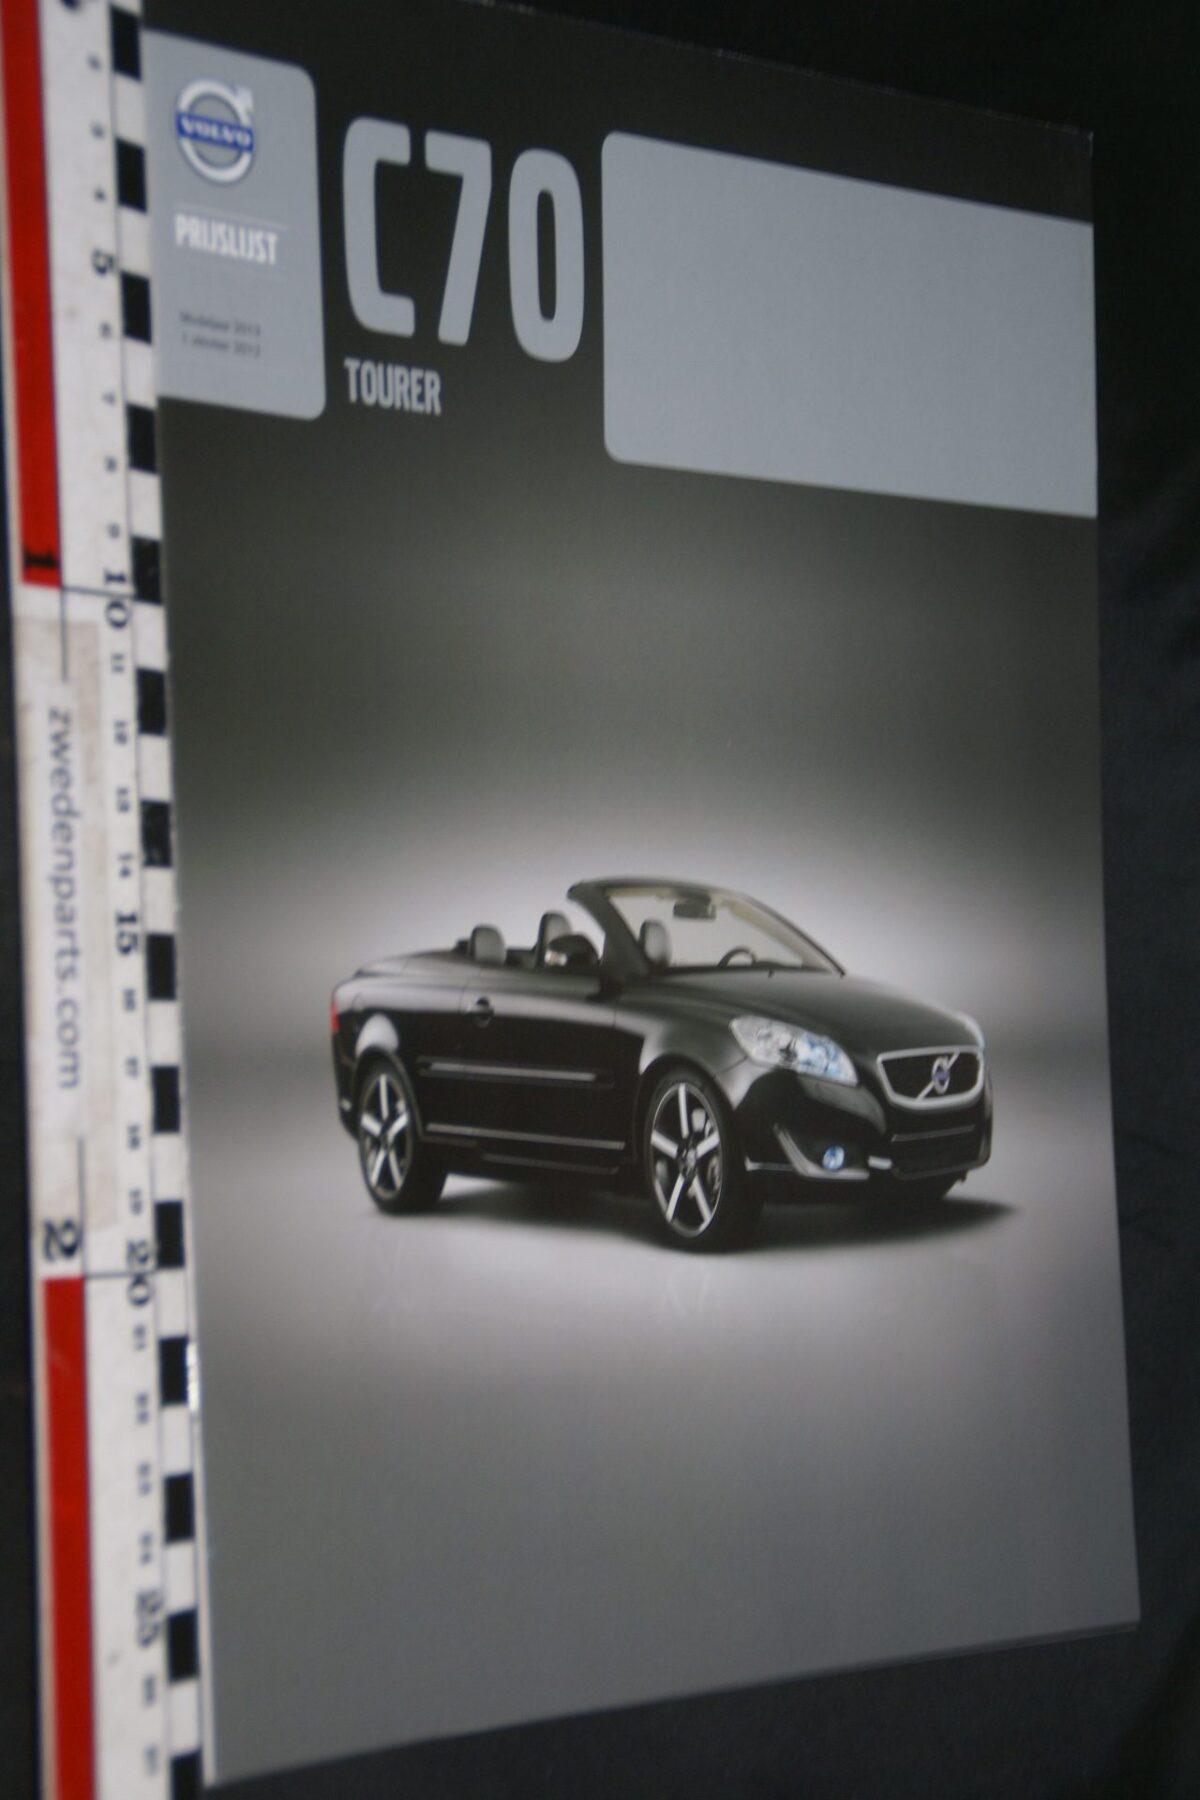 DSC06314 2012 brochure prijslijst Volvo C70 Tourer MY13 -08-2012-v2